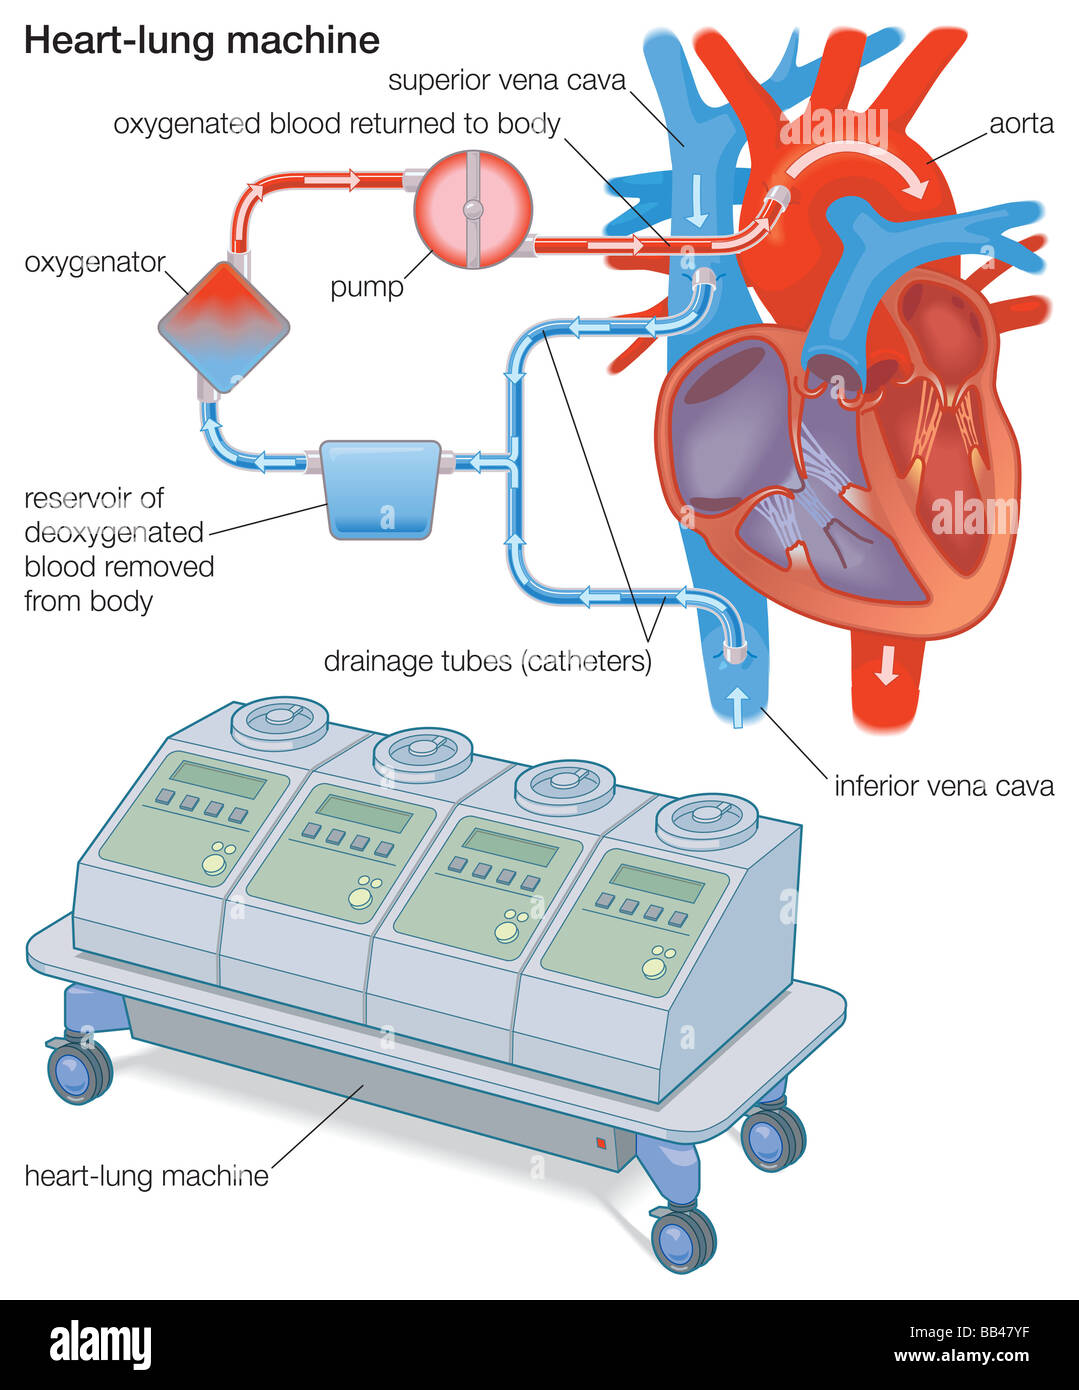 Una macchina cuore-polmone devia il sangue dal corpo di un ossigenatore, che rimuove la CO2, aggiunge O2, e riporta il sangue per il corpo Foto Stock